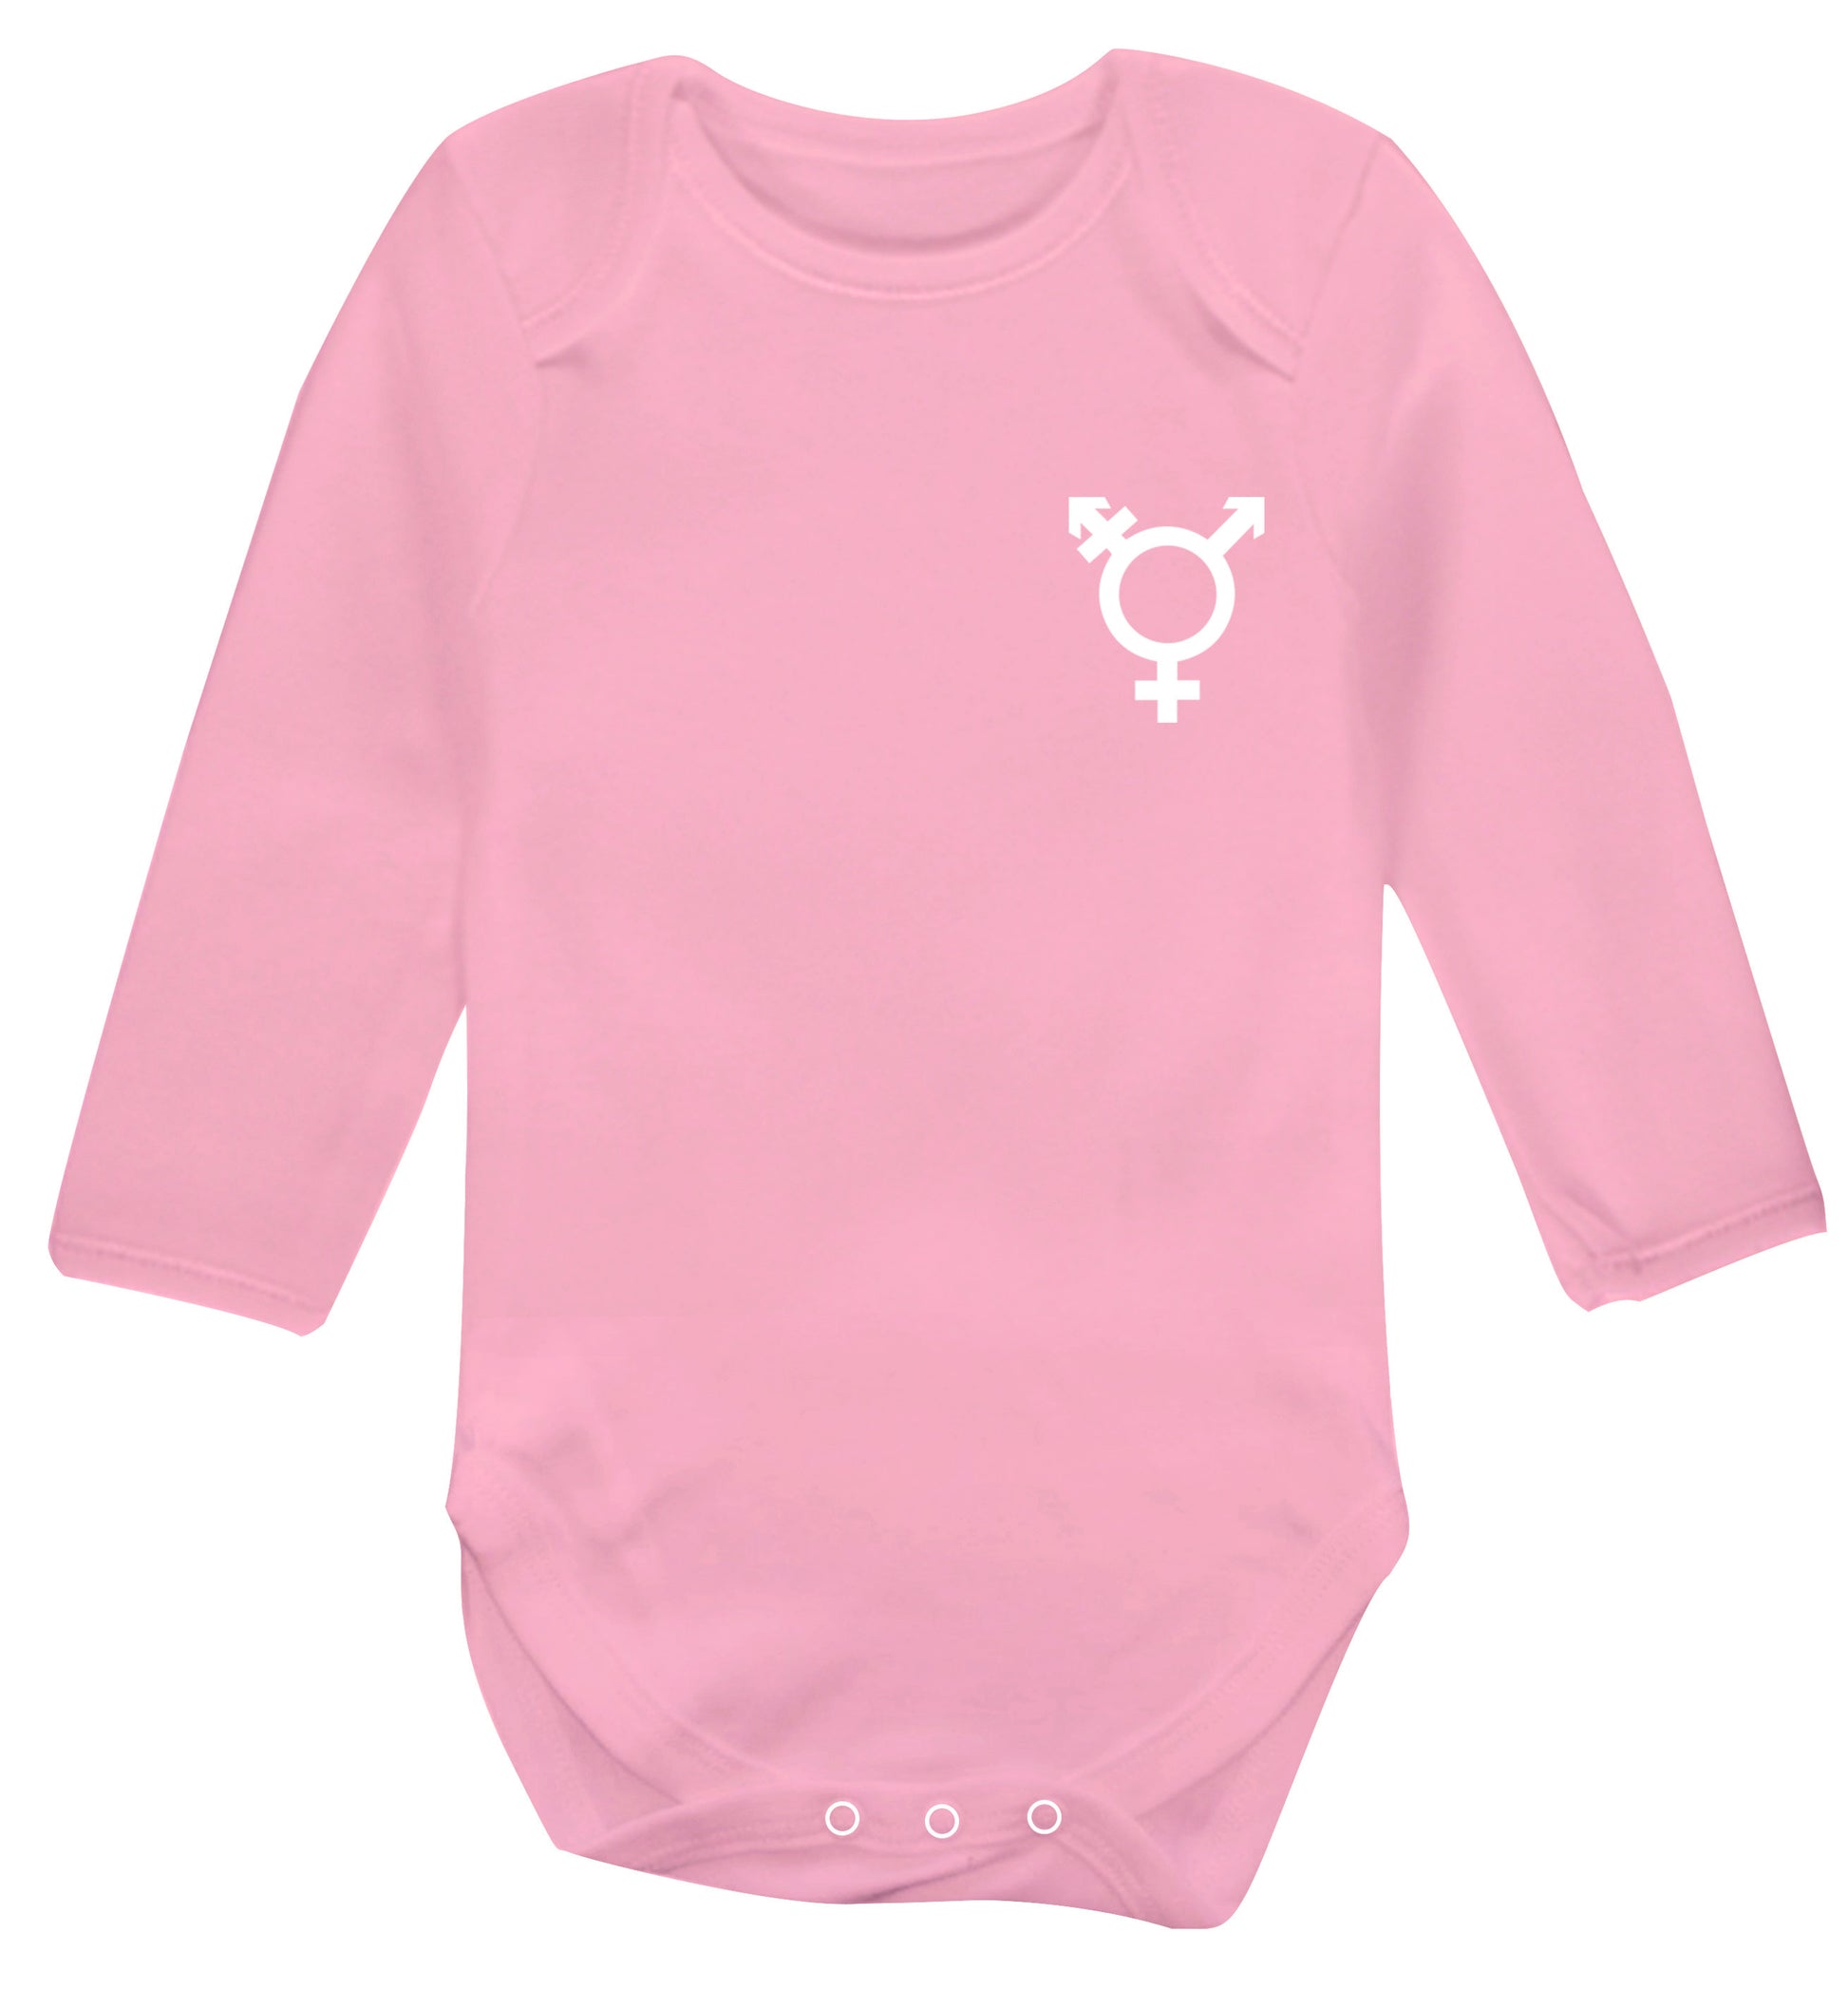 Trans gender symbol pocket Baby Vest long sleeved pale pink 6-12 months